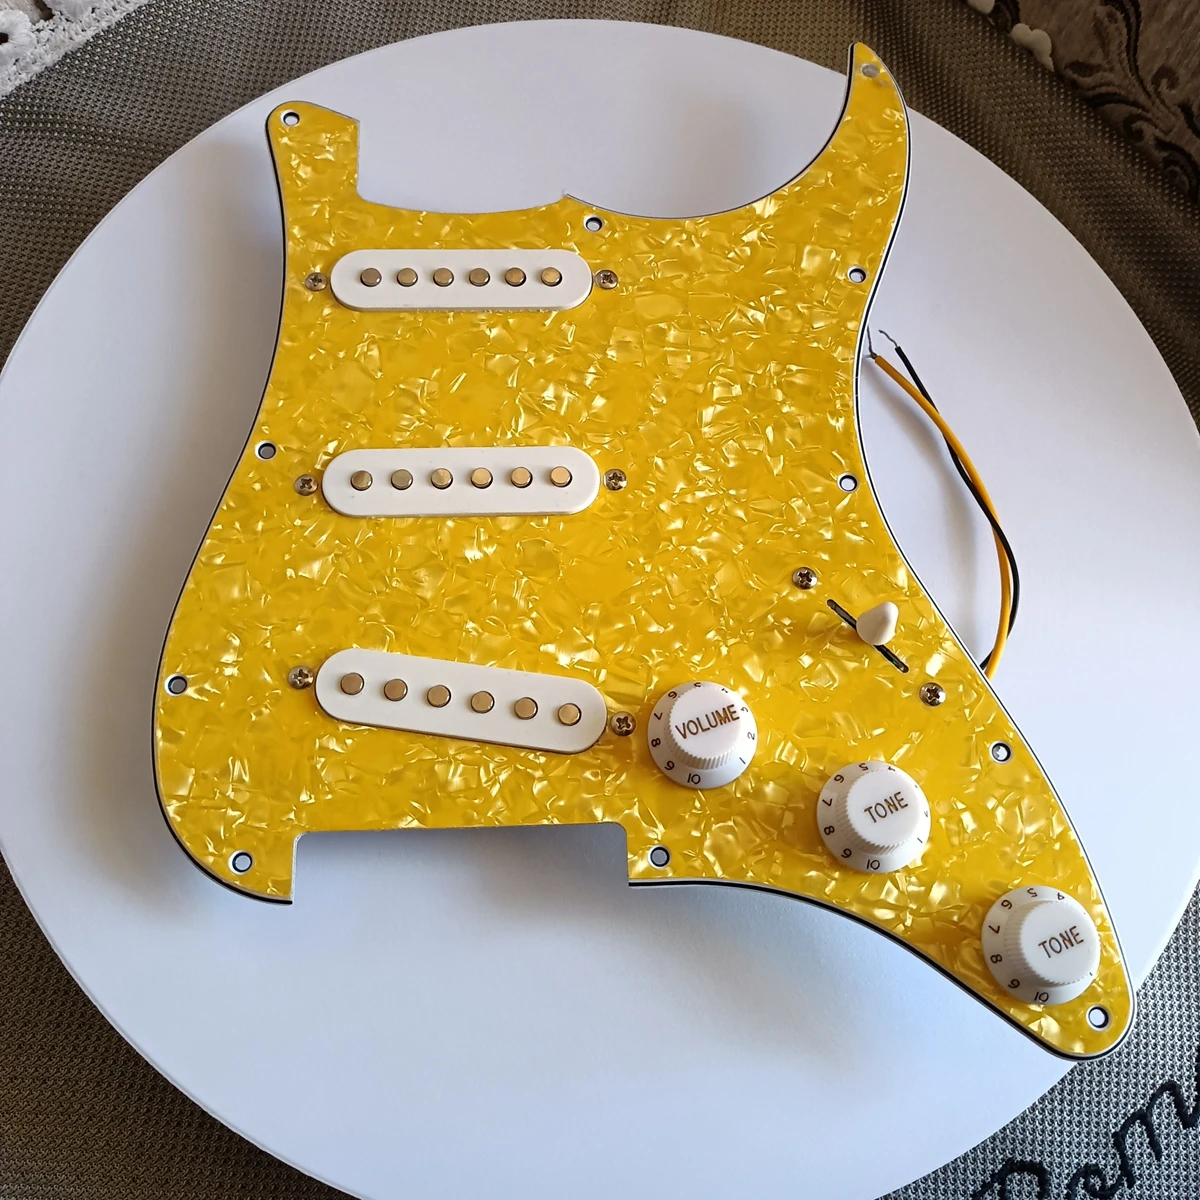 

Preпроводные SSS желтые накладки многофункциональный переключатель белая одинарная катушка Керамические пикапы сварочный жгут Запчасти для гитары